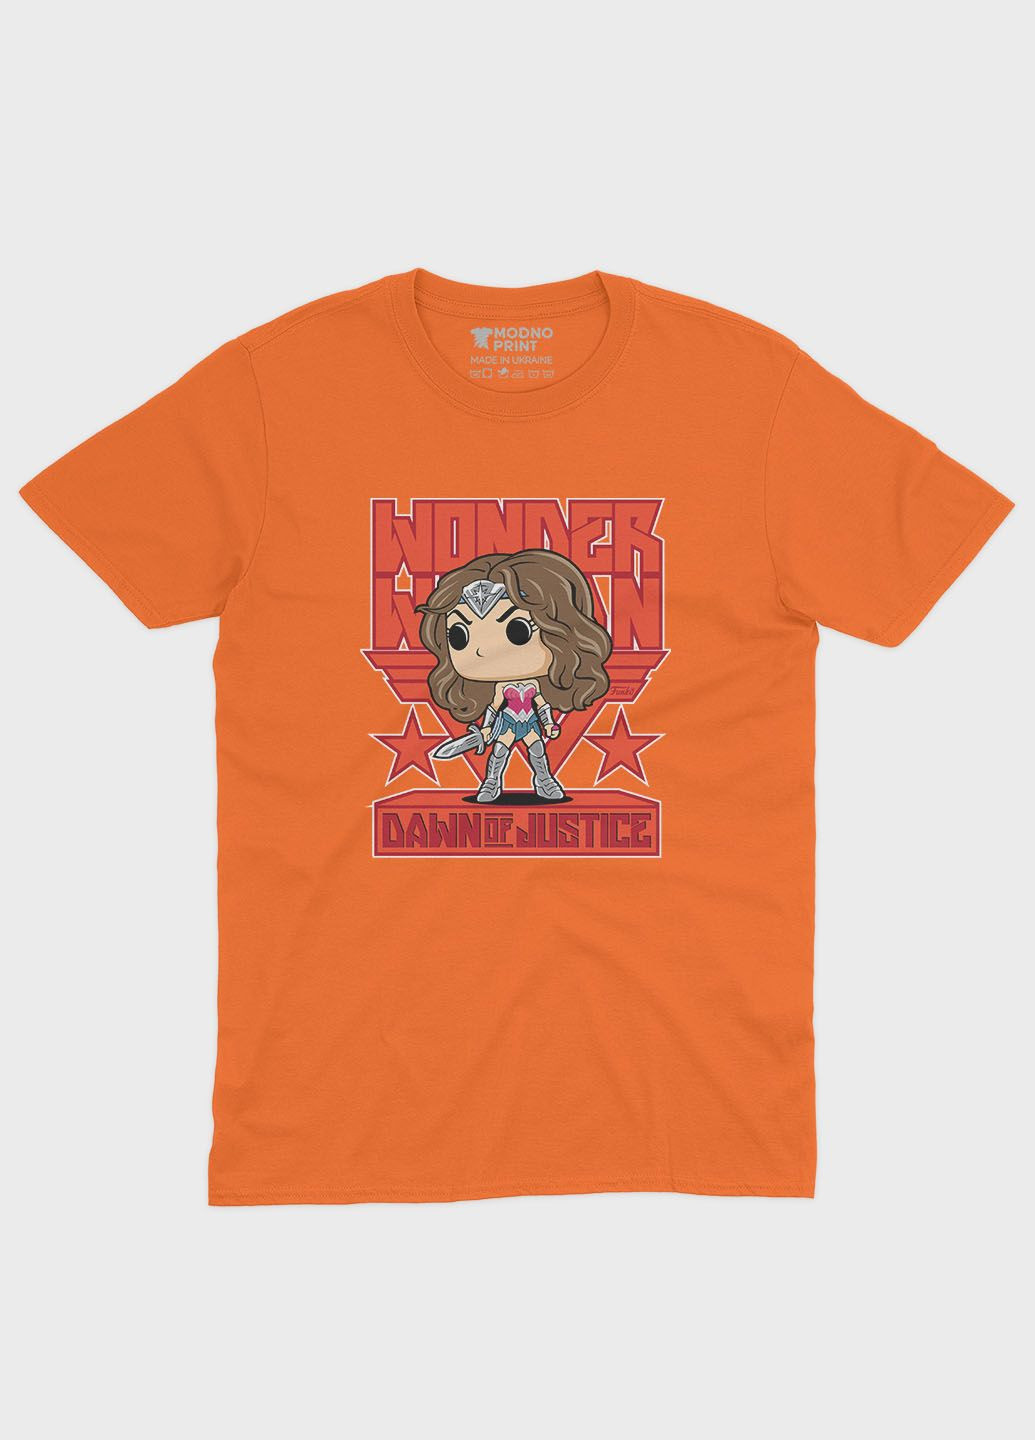 Оранжевая демисезонная футболка для девочки с принтом супергероя - чудо-женщина (ts001-1-ora-006-006-002-g) Modno